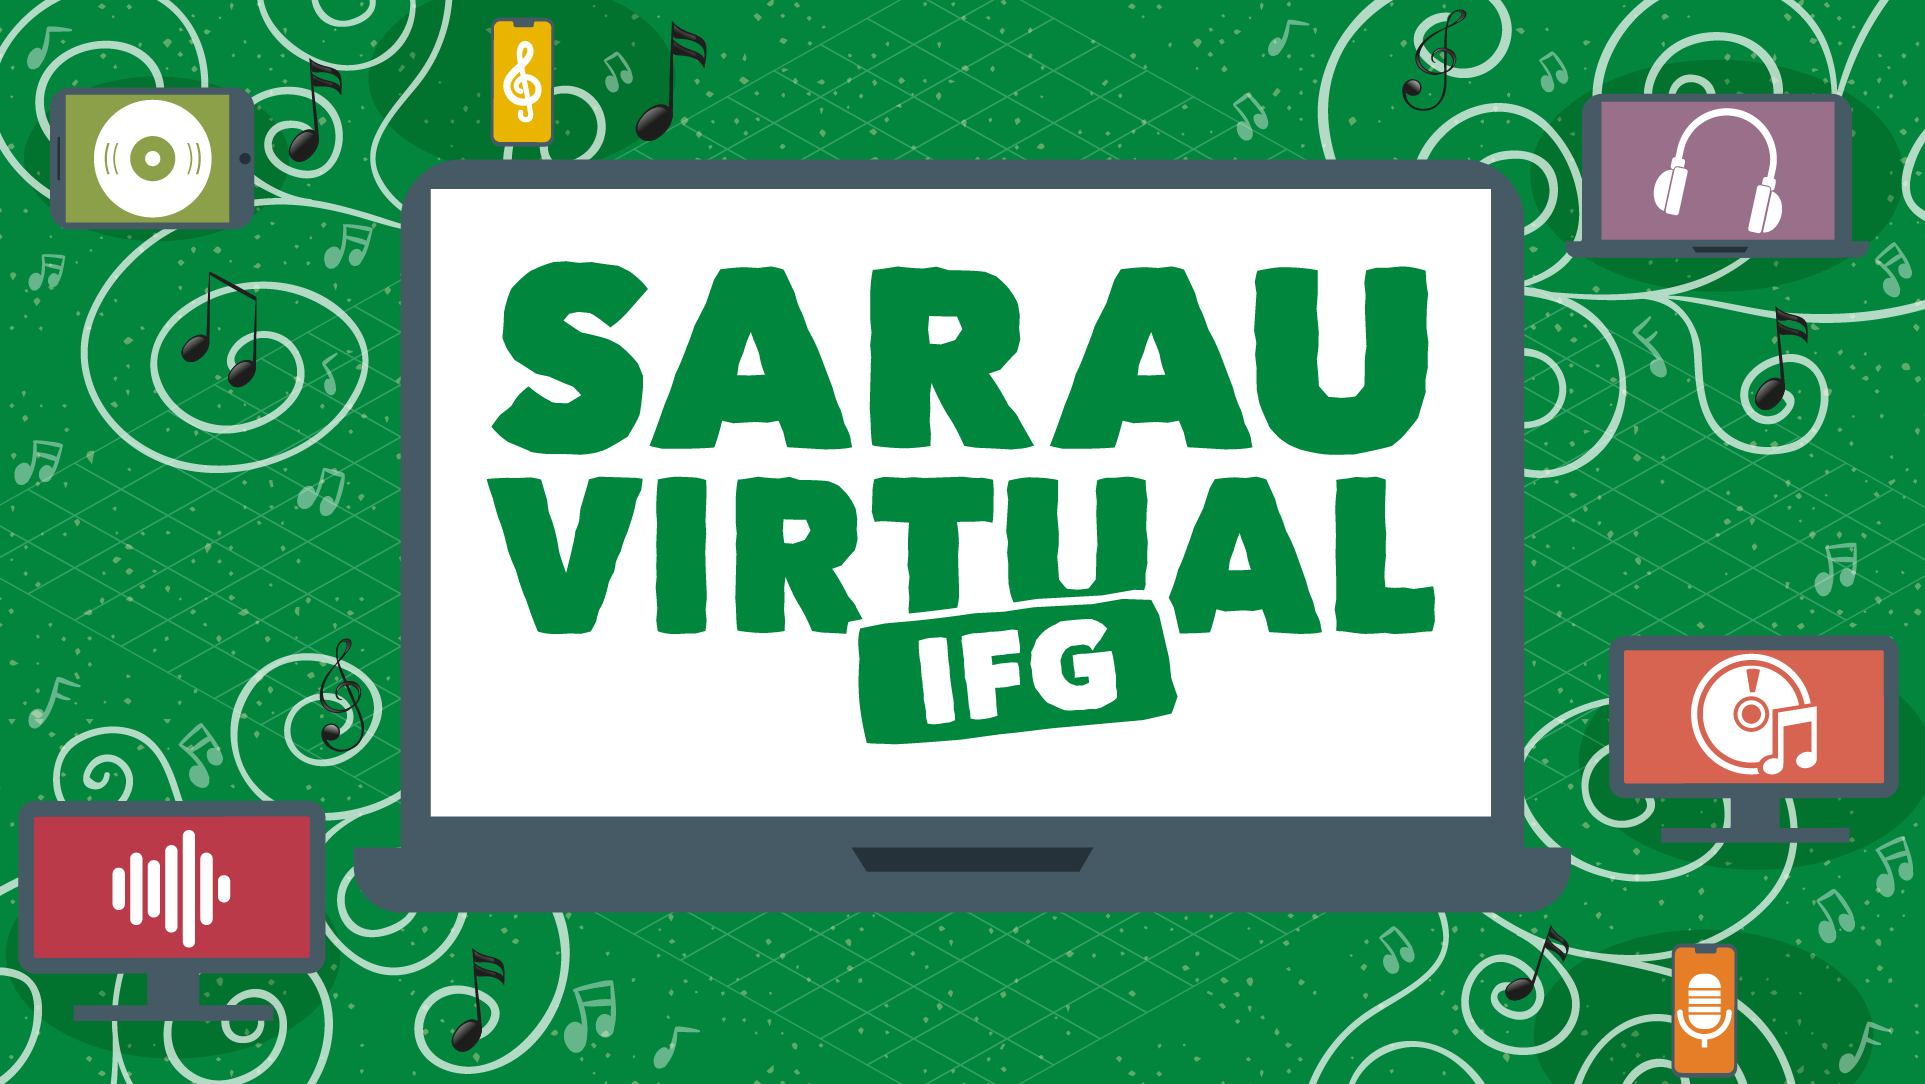 Sarau-Virtual-IFG-Destaque.png - 385.77 kb